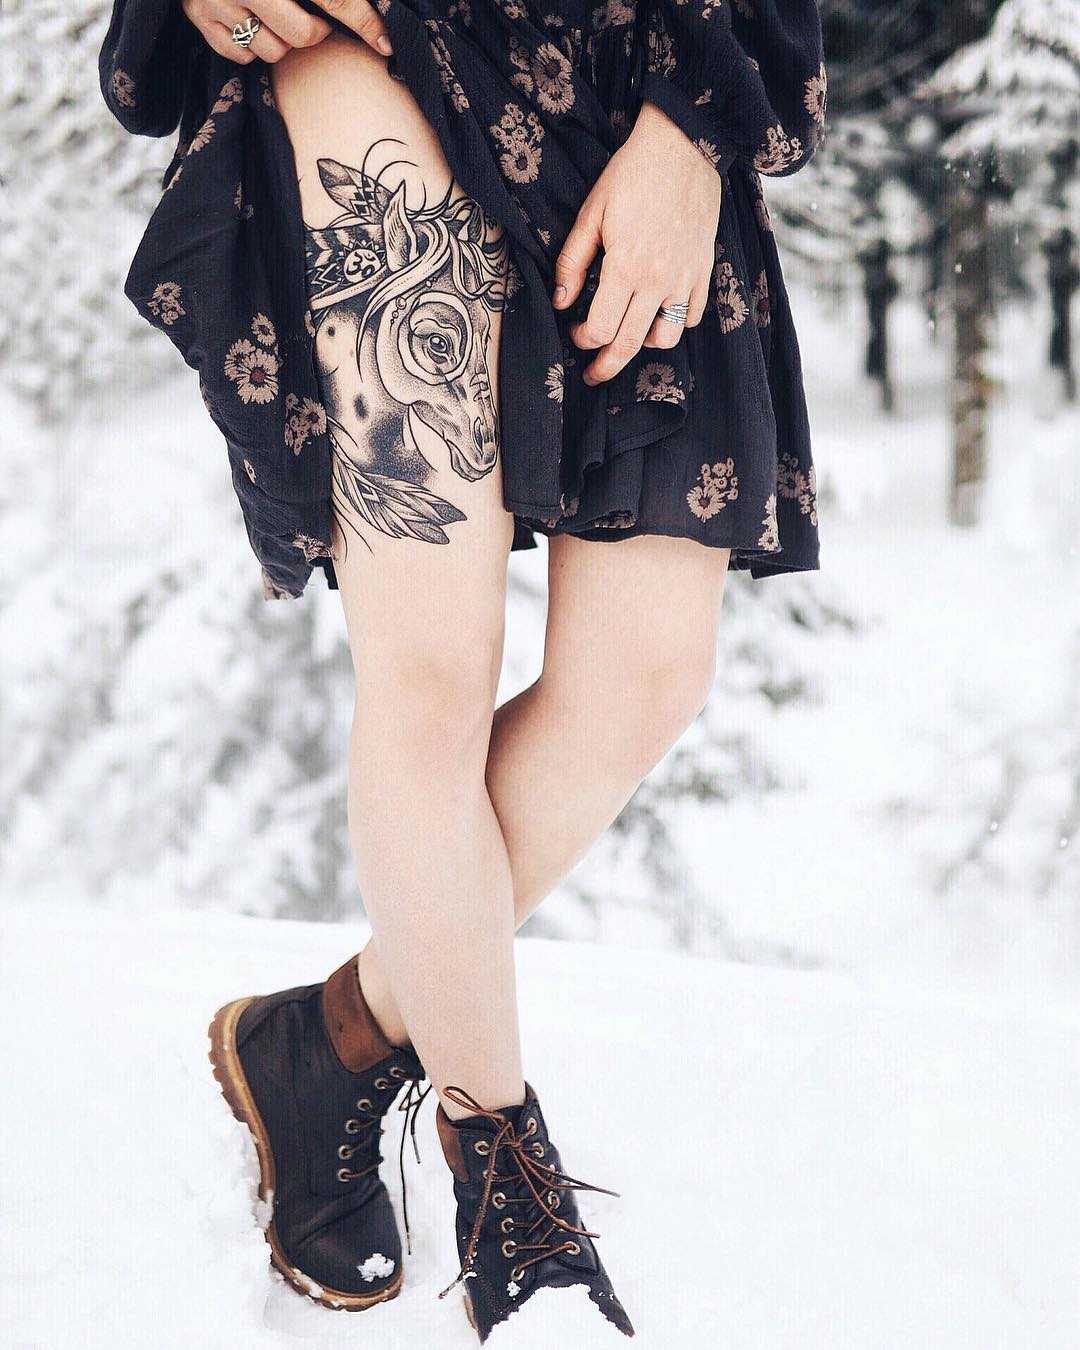 Wild spirit tattoo by Sasha Tattooing